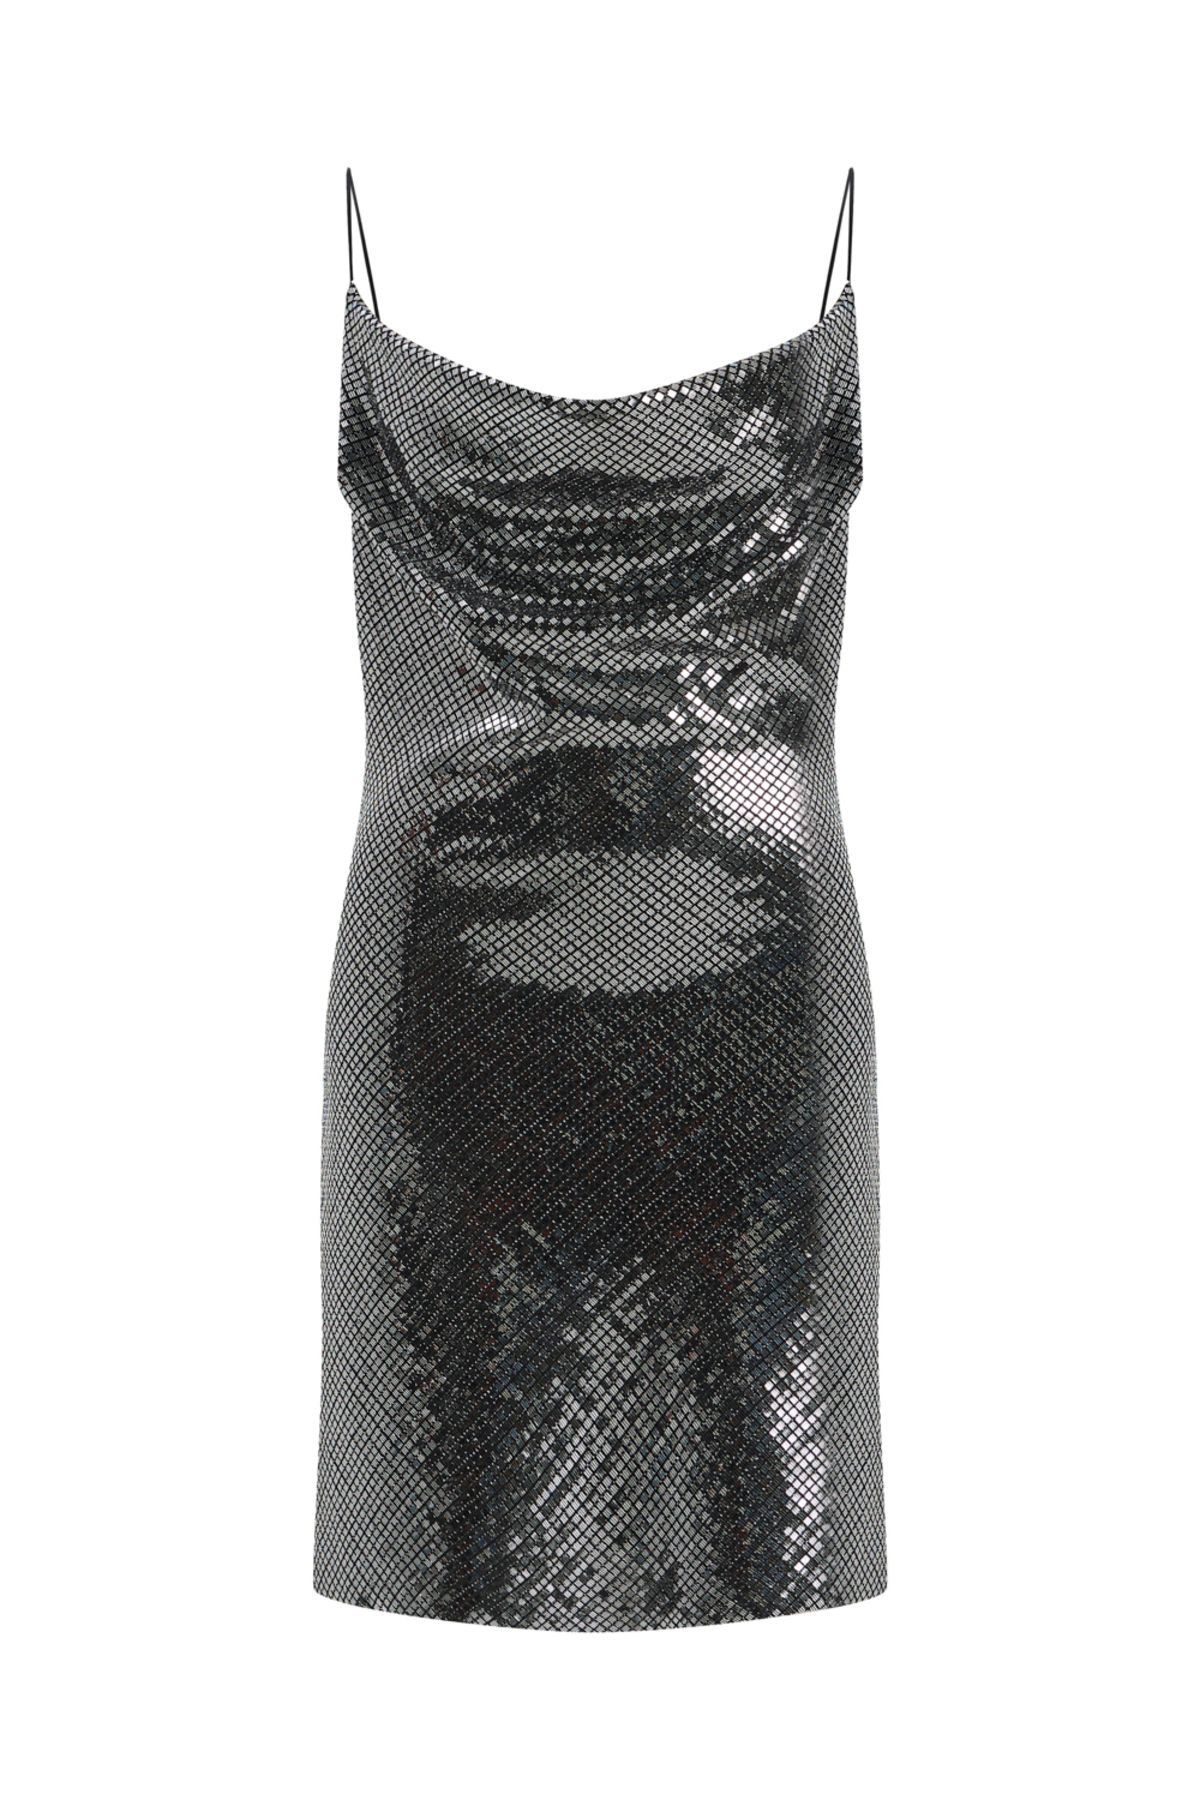 Perspective Feos Siyah Gümüş Renk Elbise